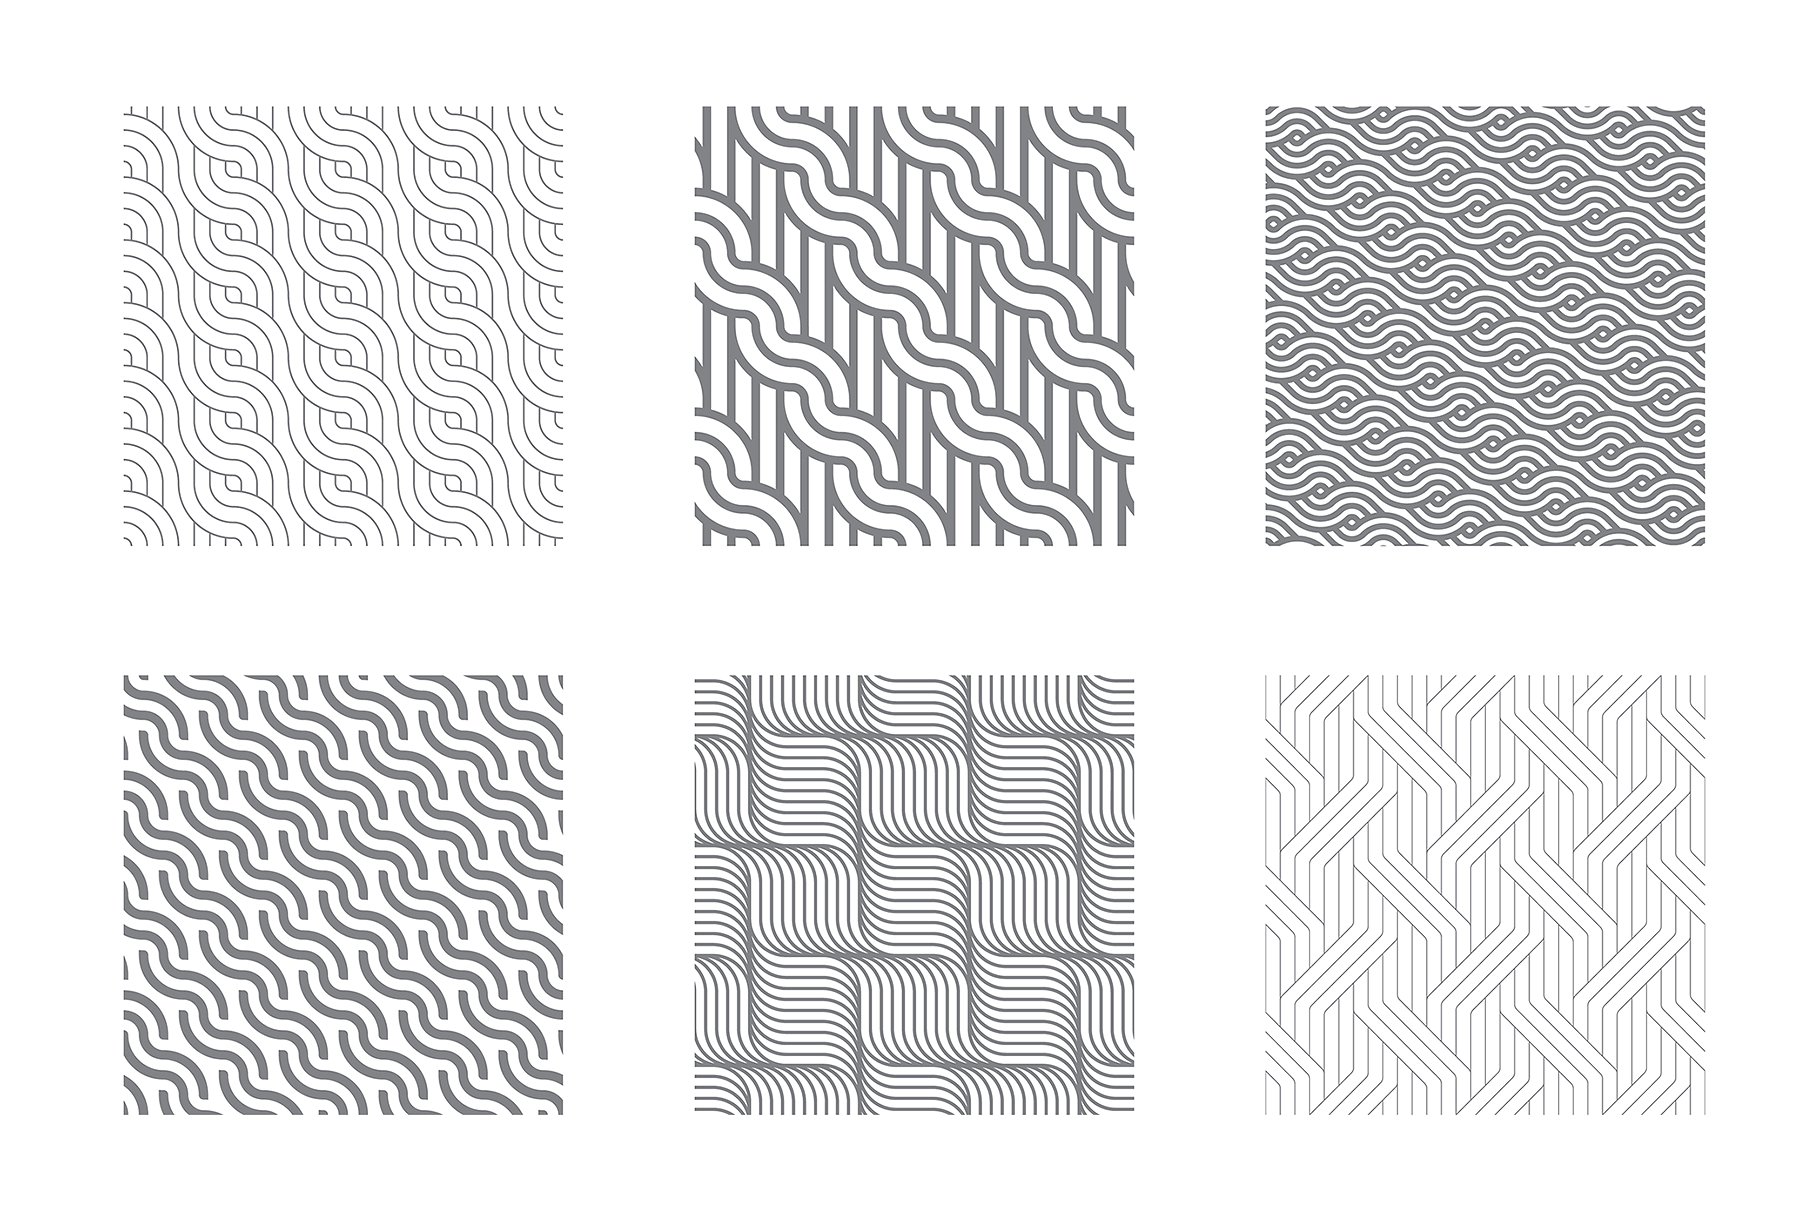 各种波纹无缝纹理图案素材 Rippled Seamless Patterns Bundle v.2插图(5)